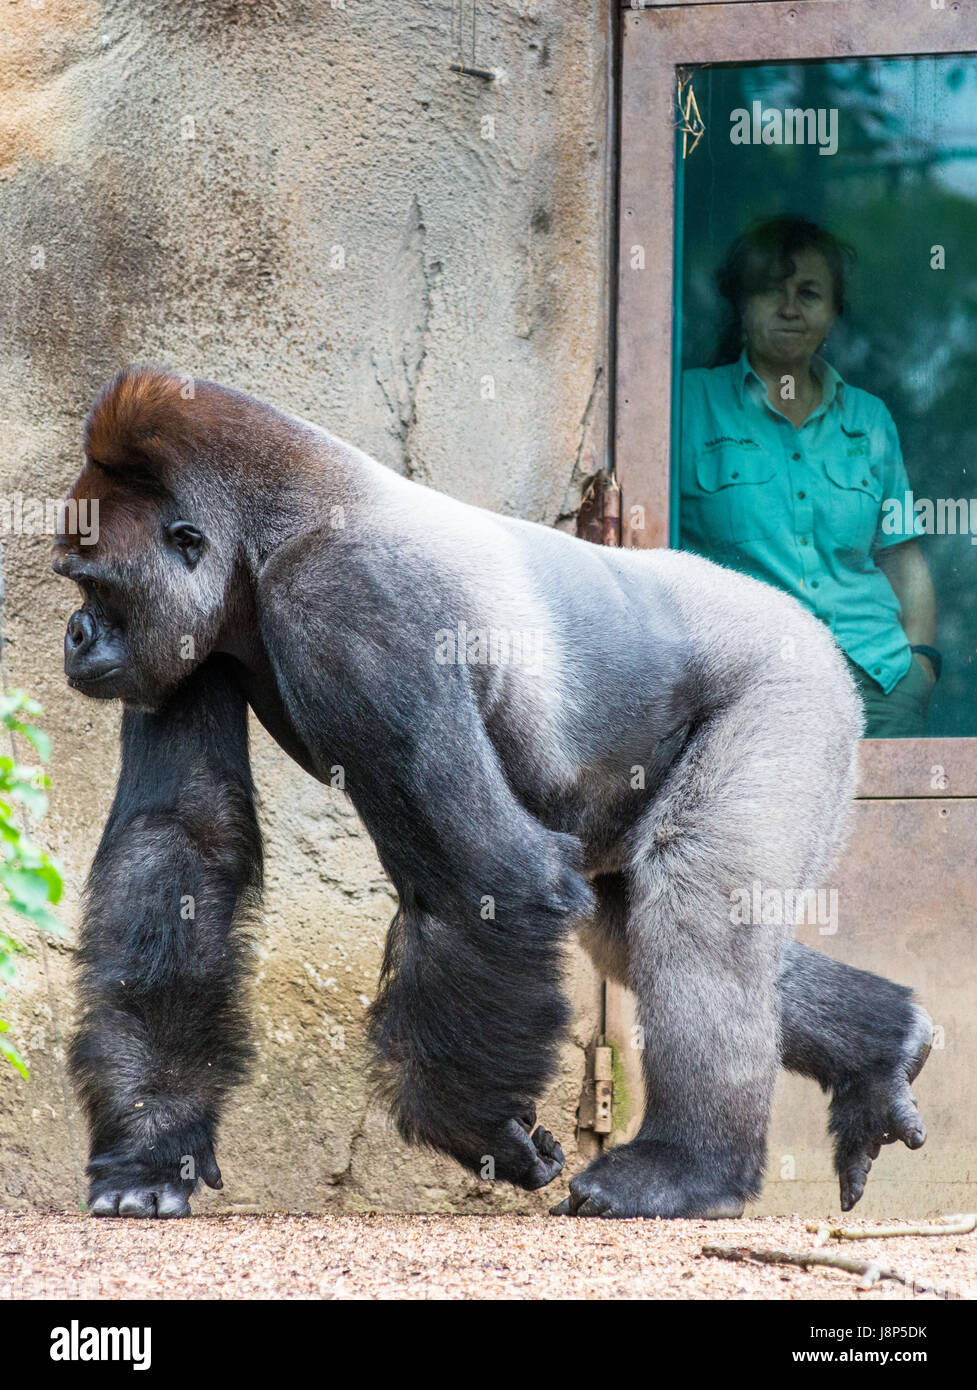 Zoo keeper garde un oeil sur Silverback gorilla au zoo de Taronga, Sydney, Australie. Banque D'Images